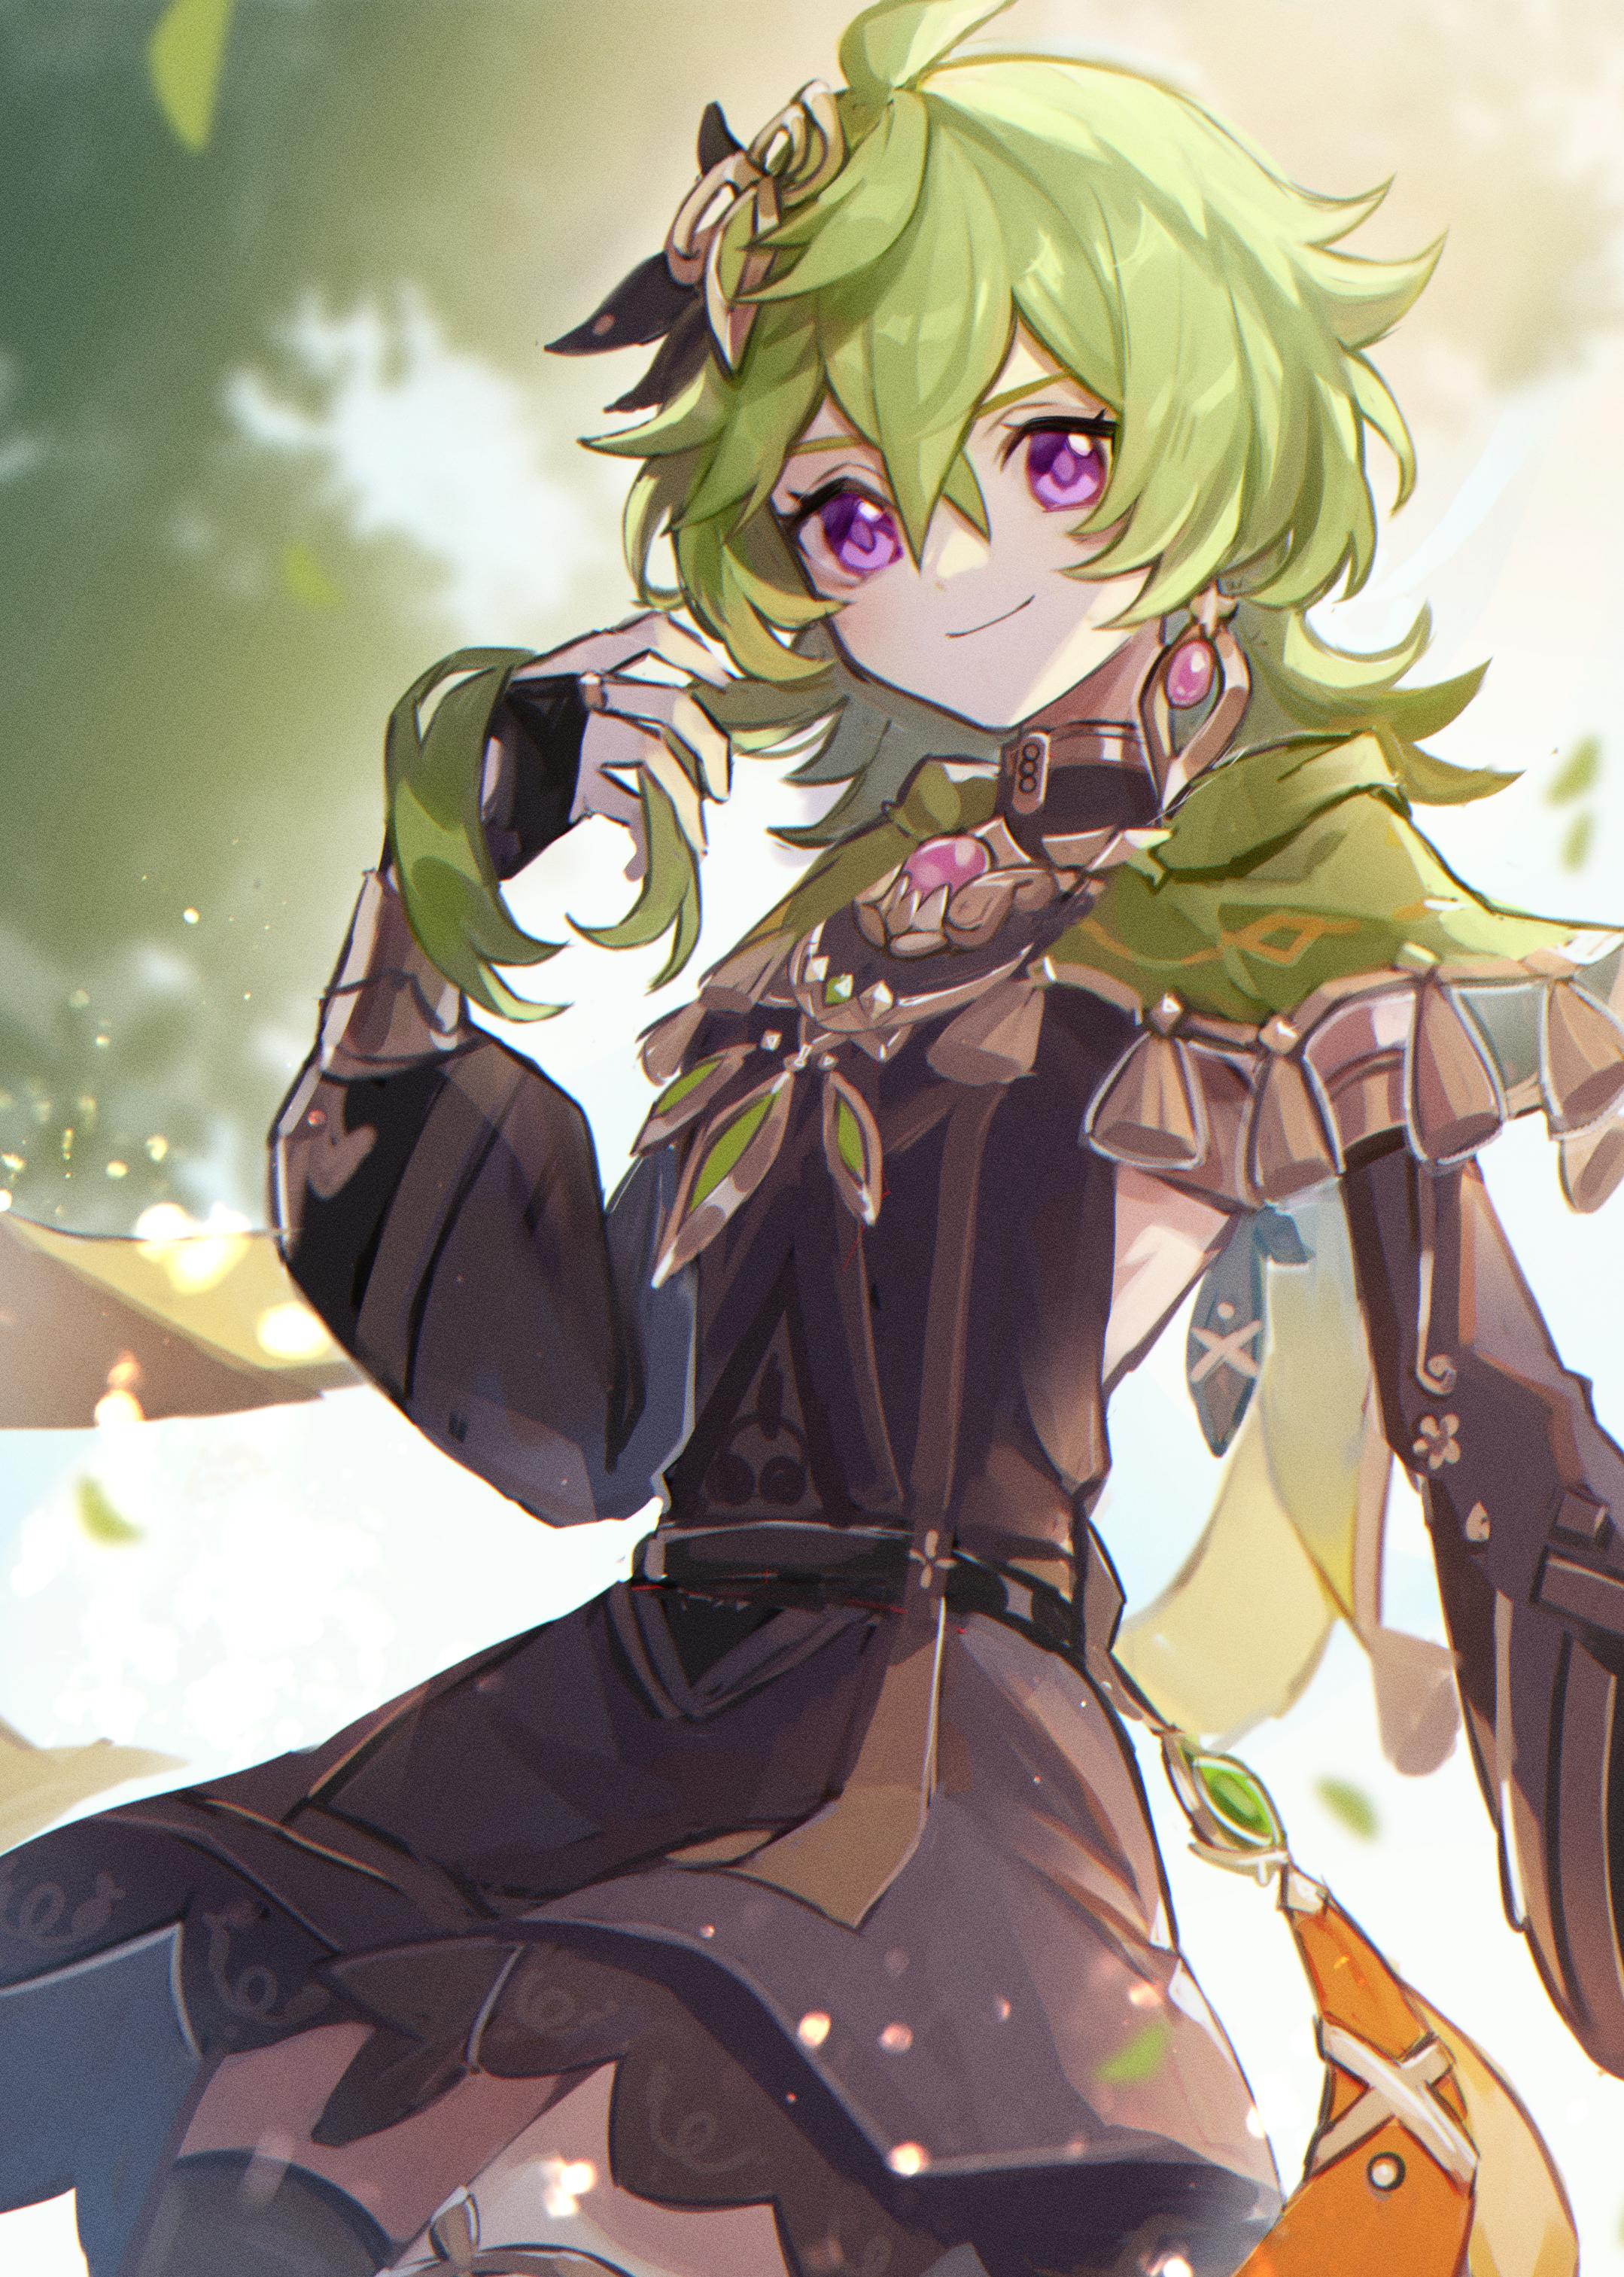 Collei  𝗚𝗲𝗻𝘀𝗵𝗶𝗻 𝗜𝗺𝗽𝗮𝗰𝘁 𝘄𝗮𝗹𝗹𝗽𝗮𝗽𝗲𝗿  Zelda characters  Character Anime